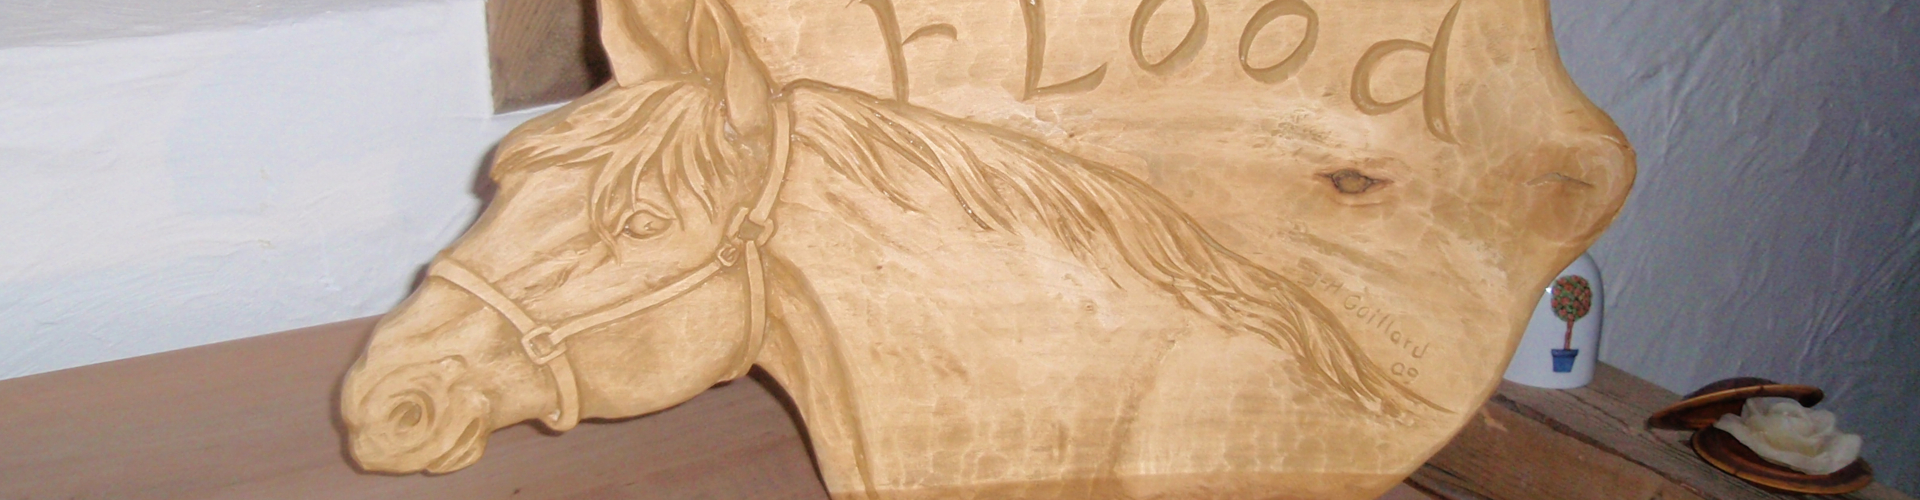 Sculpture bois cheval bas relief